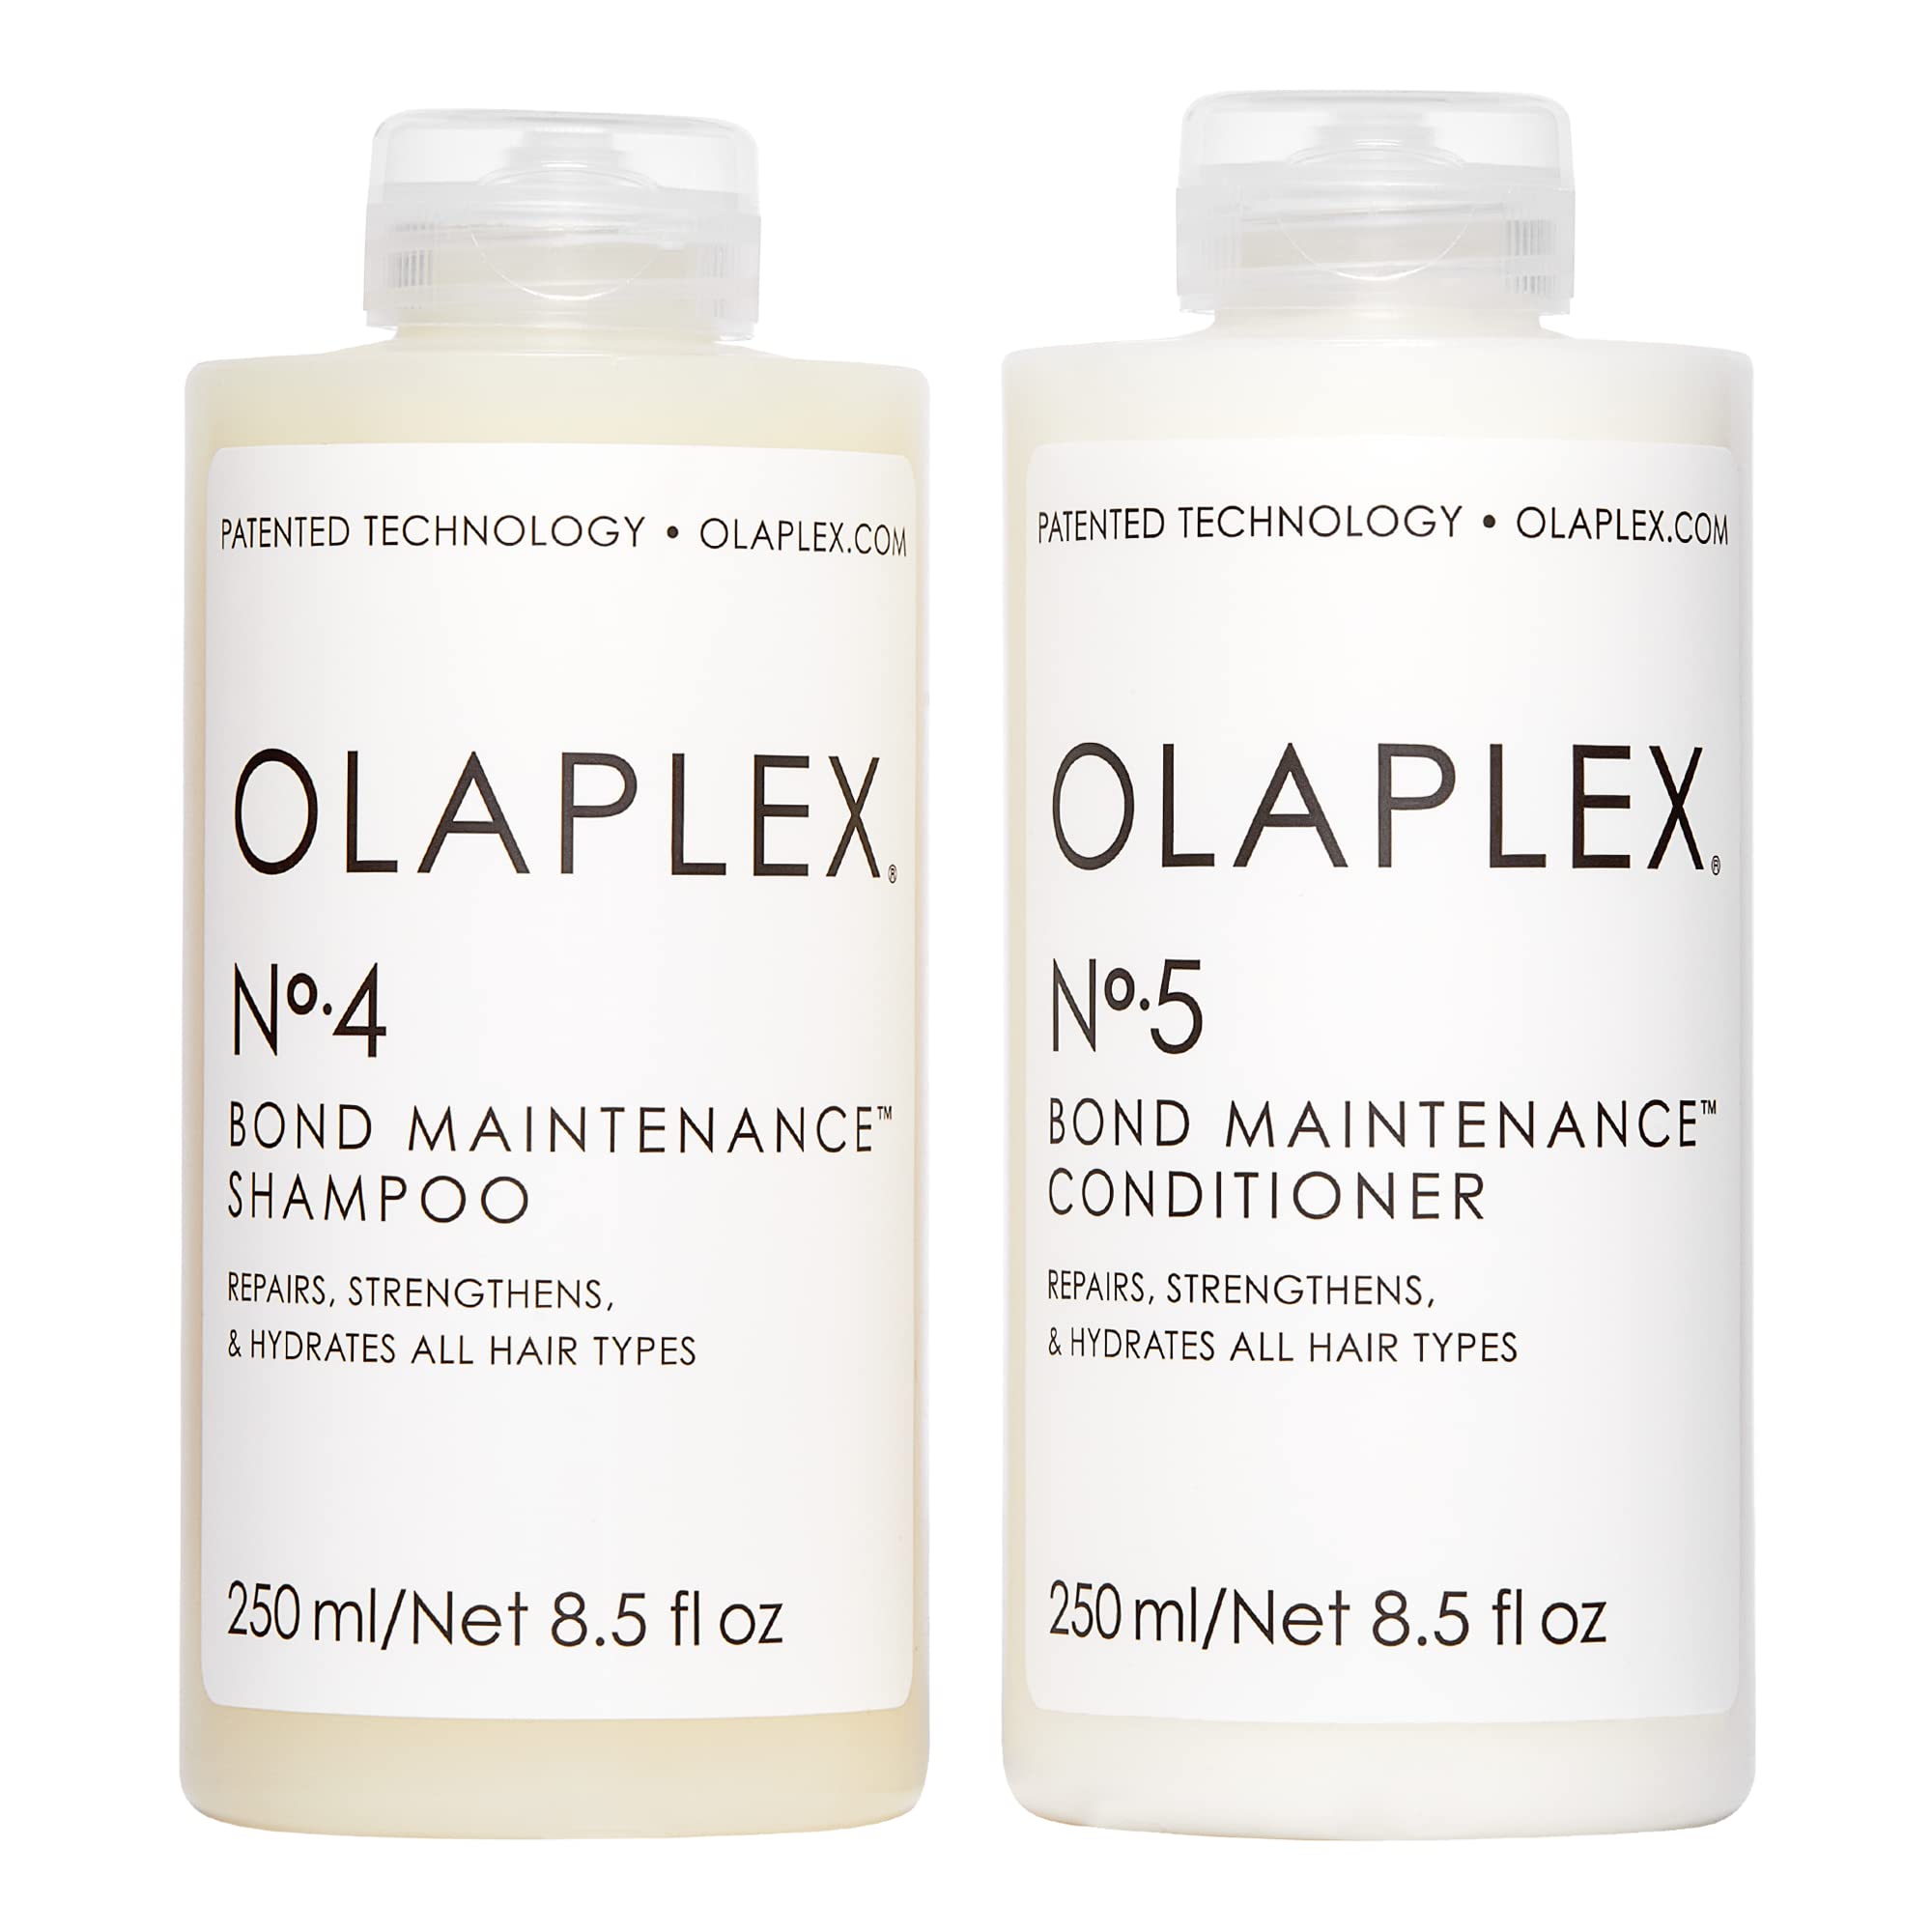 OLAPLEX No.4 Bond Maintenance Shampoo with No.5 Bond Maintenance Conditioner